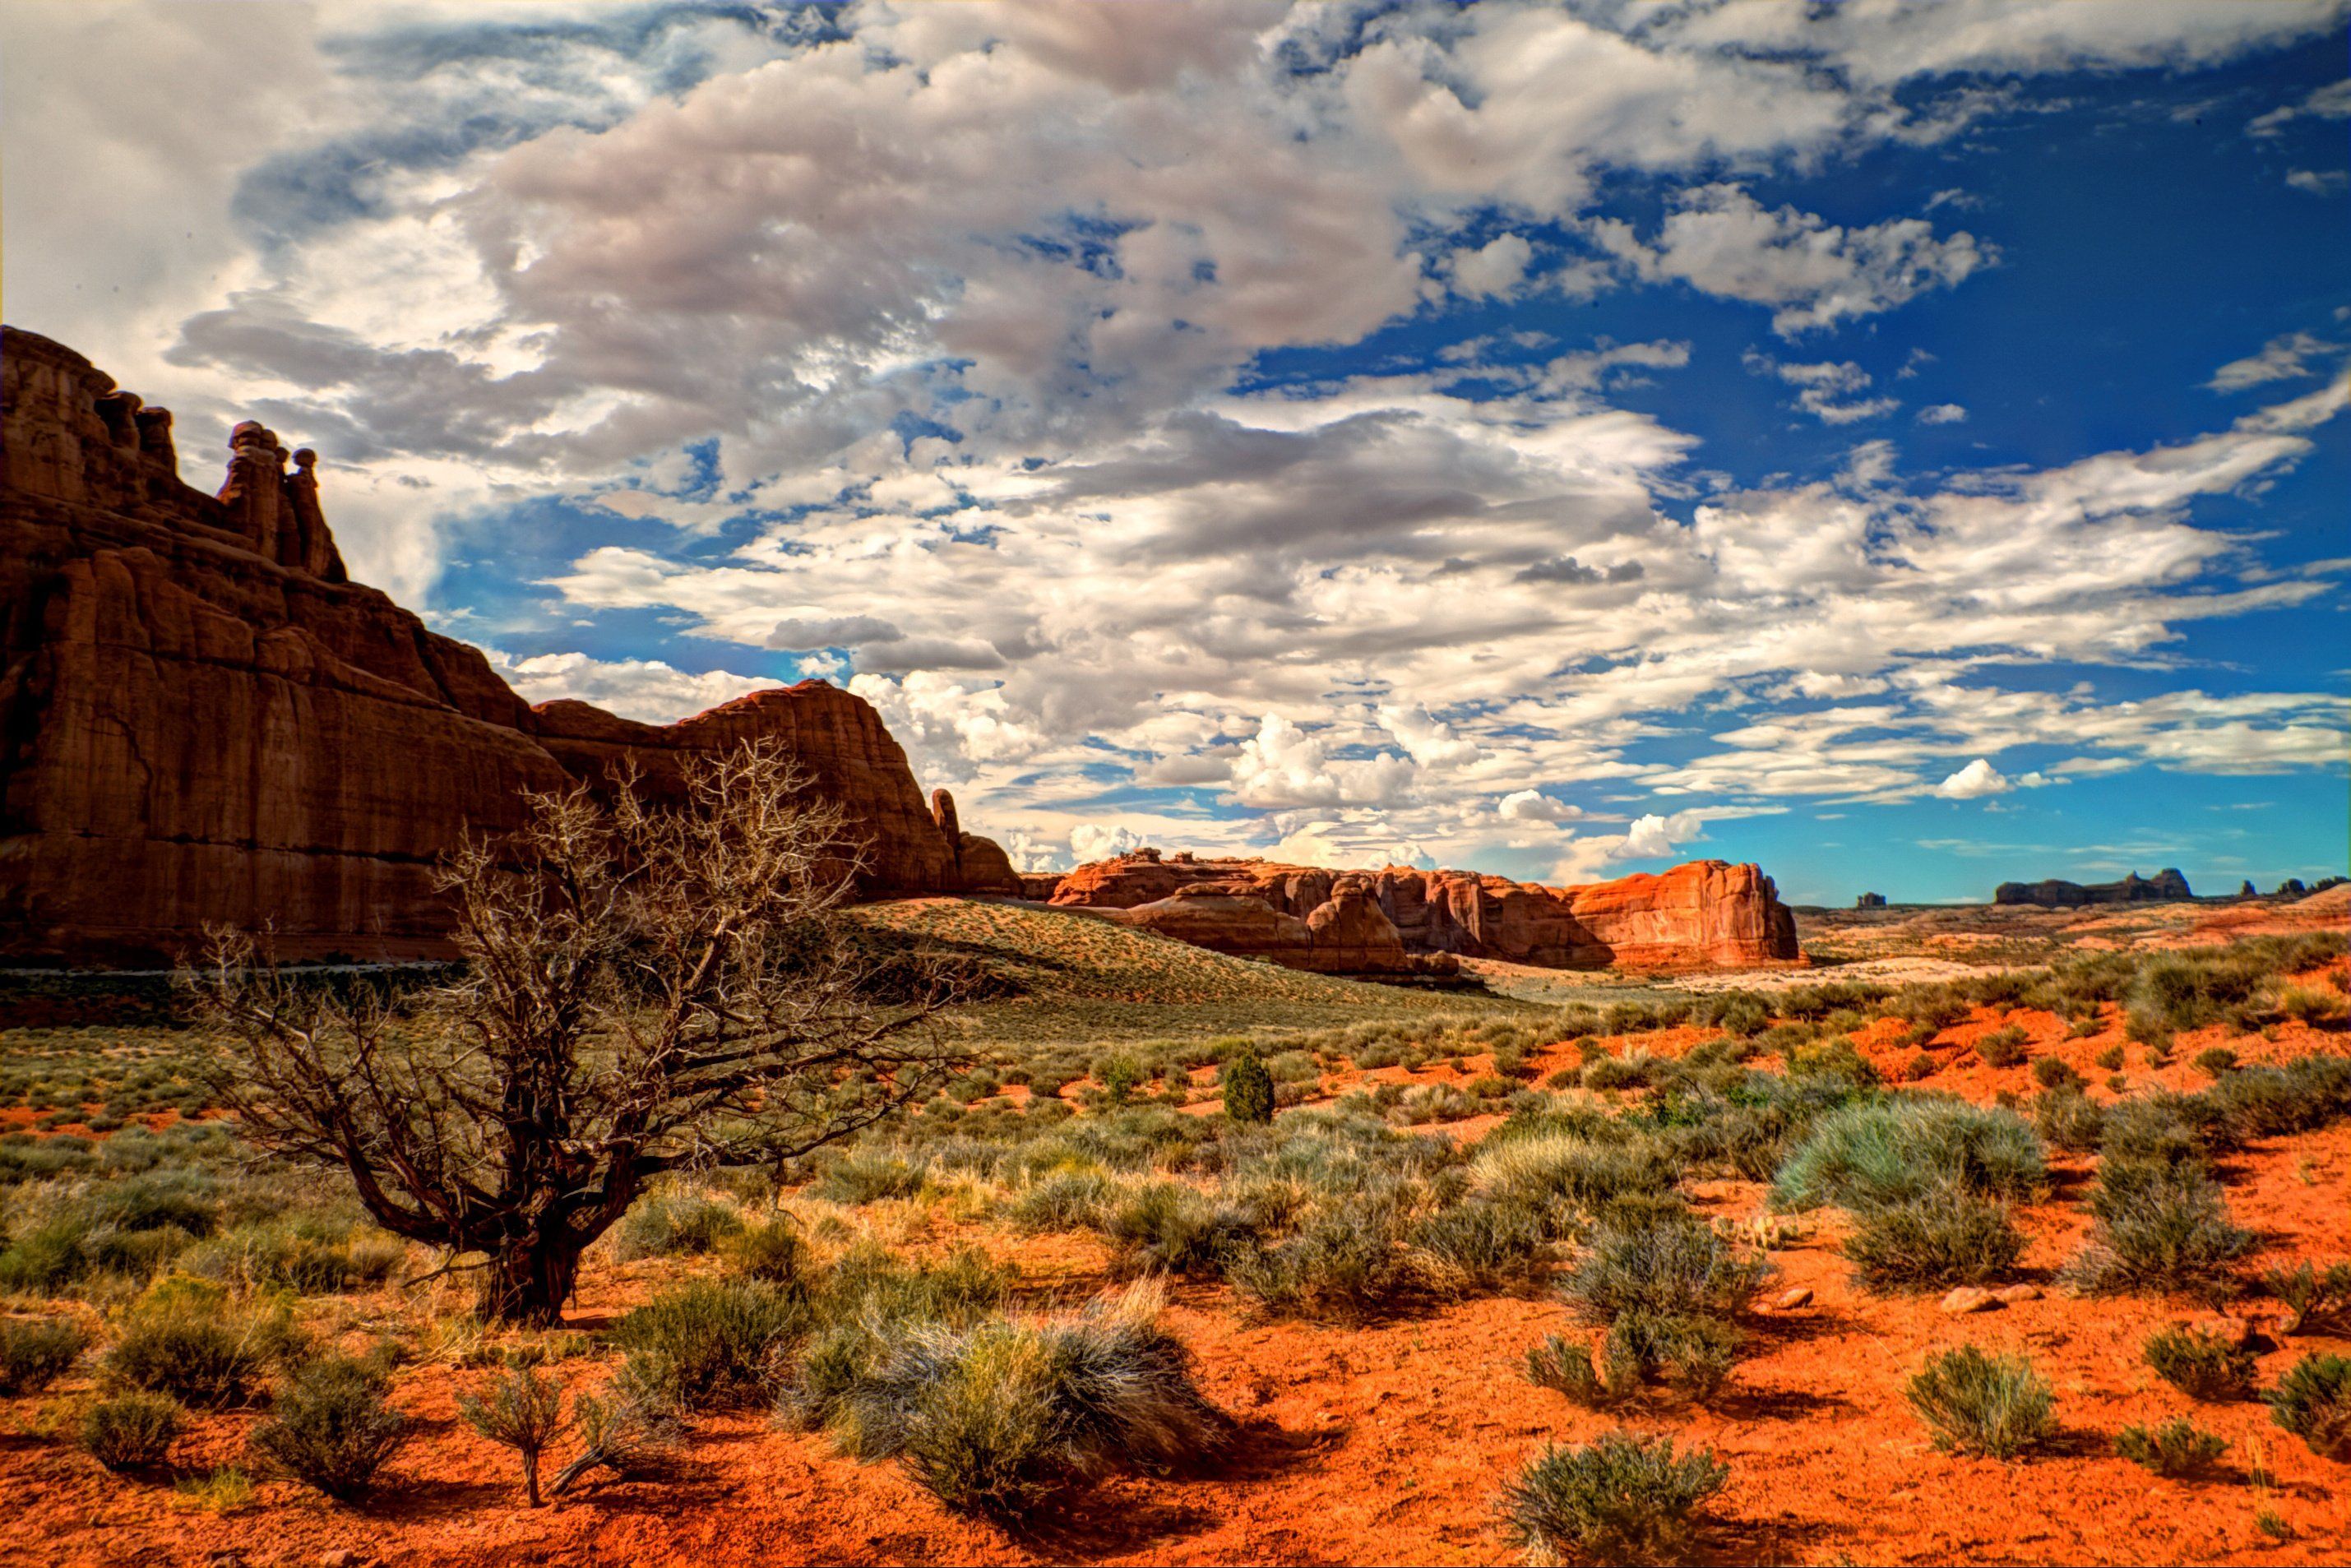 2859x1907 Desert Landscape Wallpaper - Top Free Desert Landscape on WallpaperBat